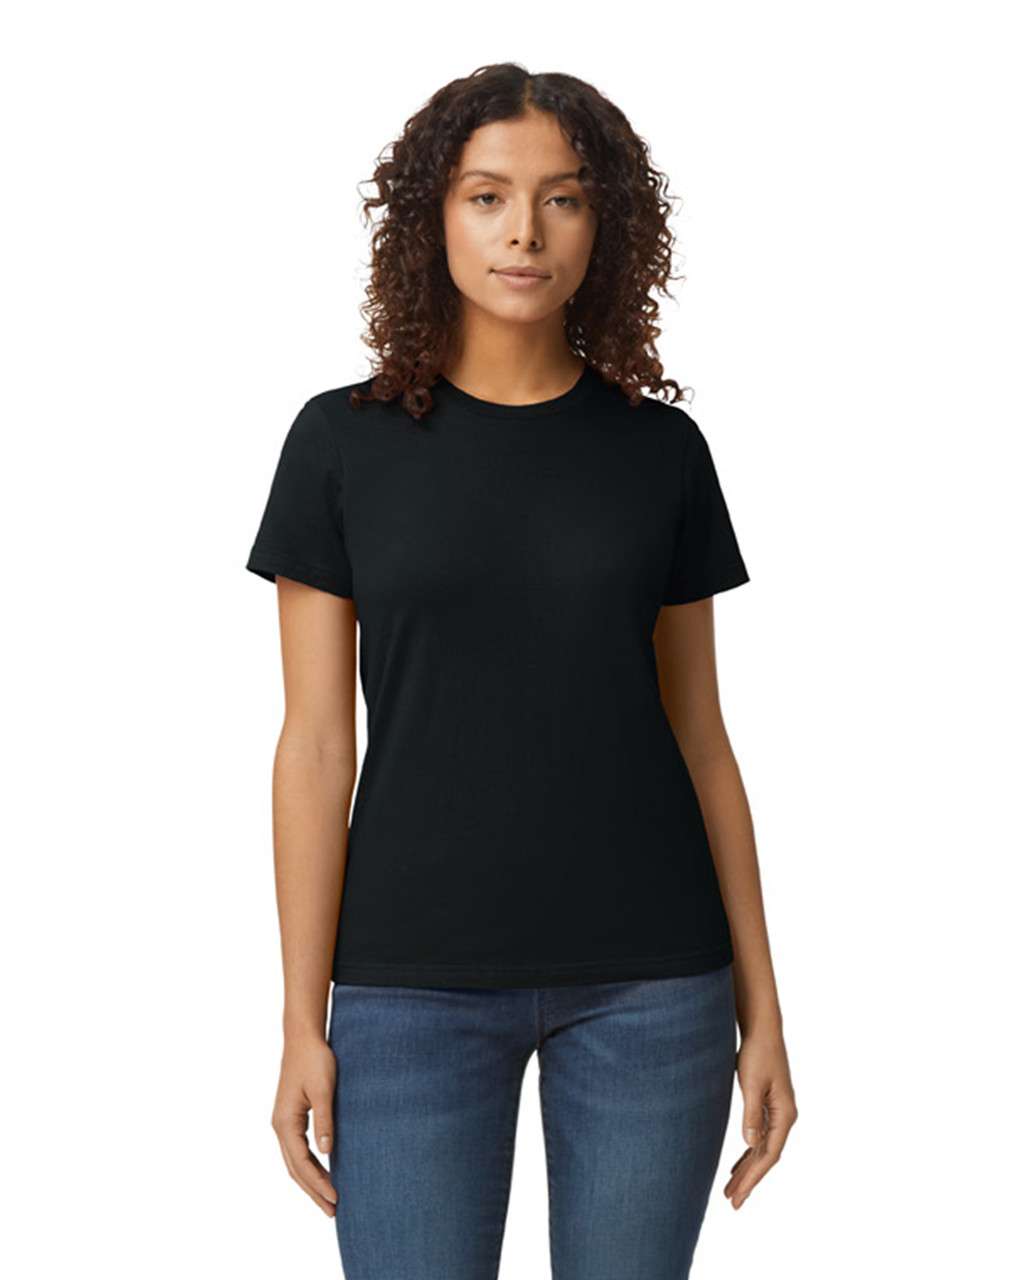 Gildan Softstyle® Midweight Women's T-shirt - černá